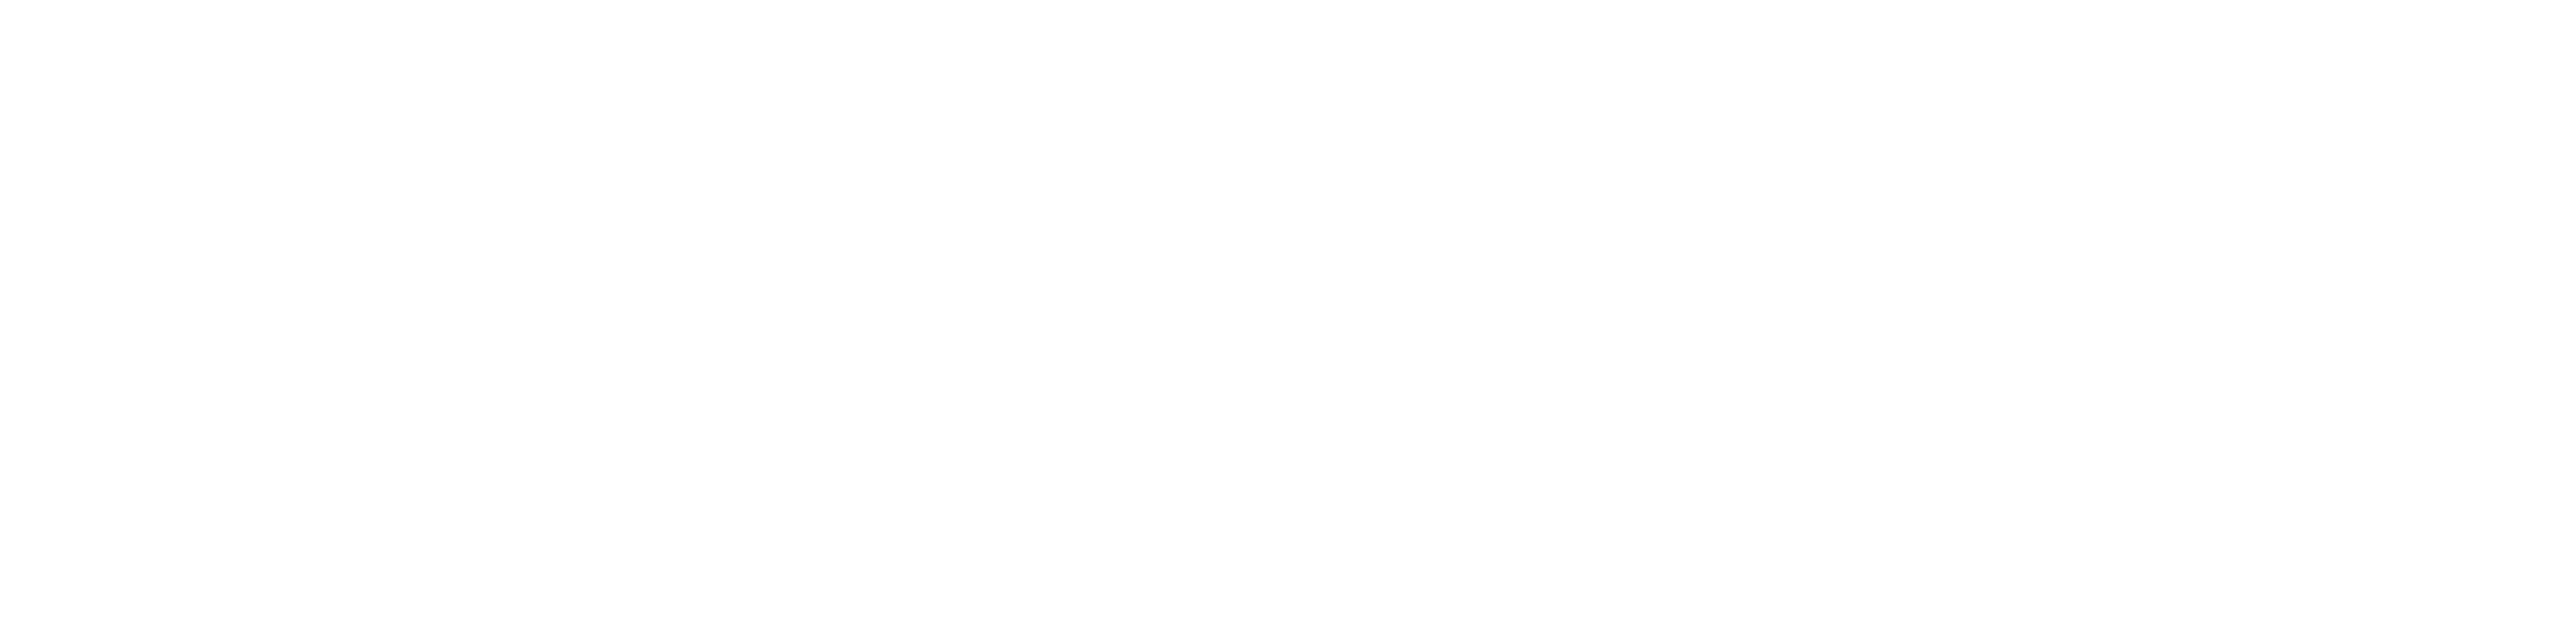 3.11.2022